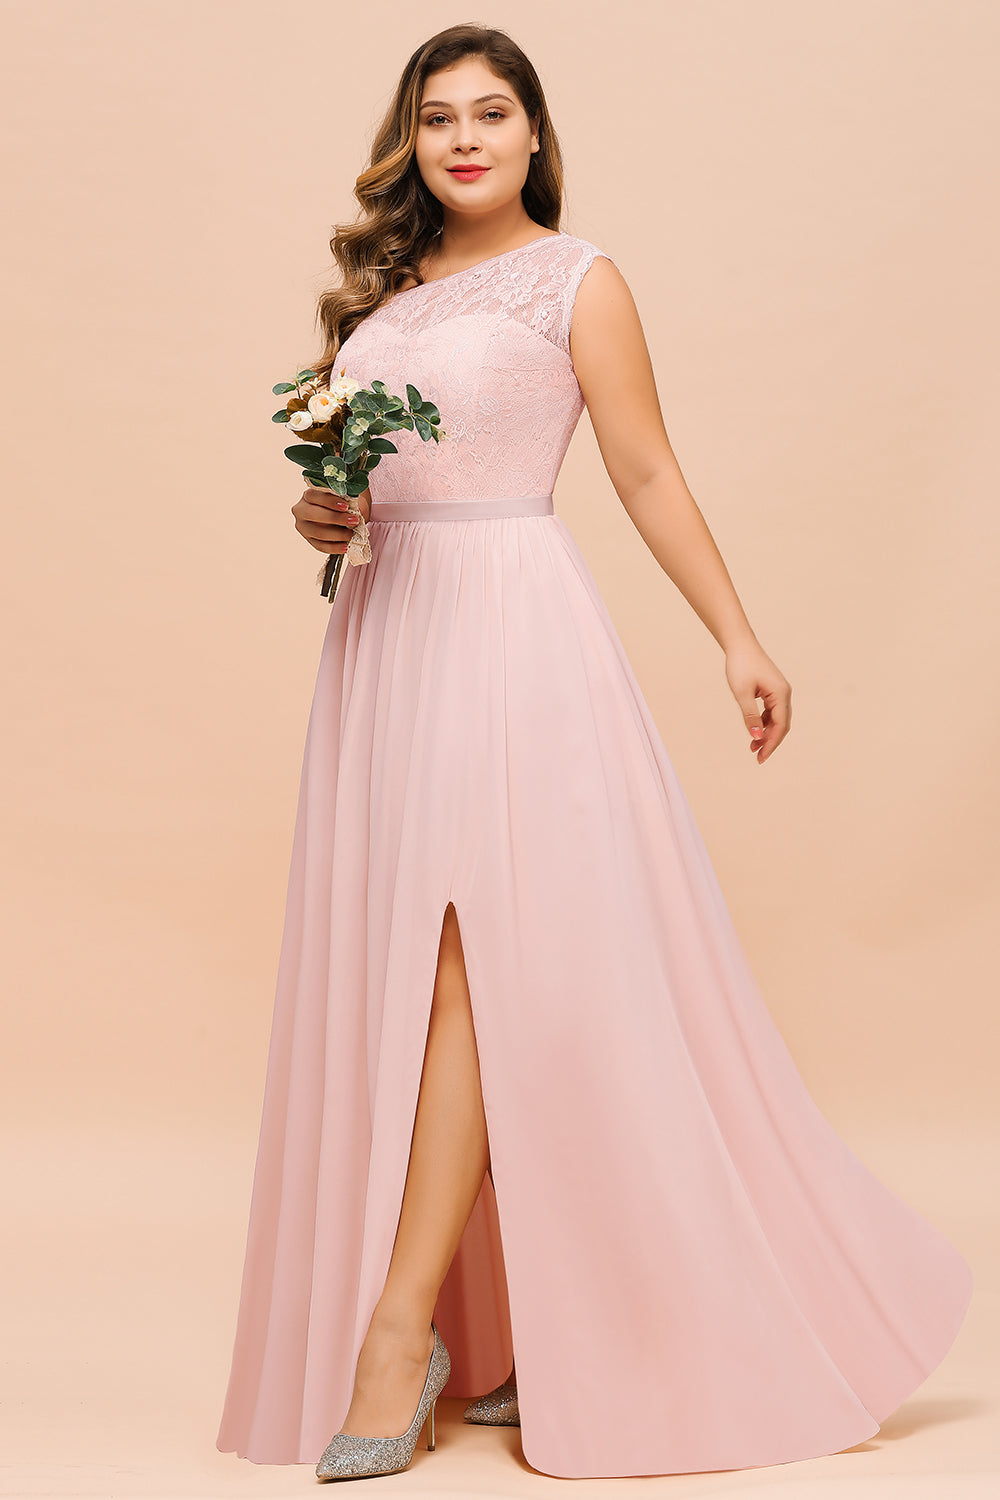 Suchen Sie Elegante Brautjungfernkleider Lang Rosa online bei babyonlinedress.de. Brautjungfernkleid mit Spitze für Sie zur Hochzeit gehen.